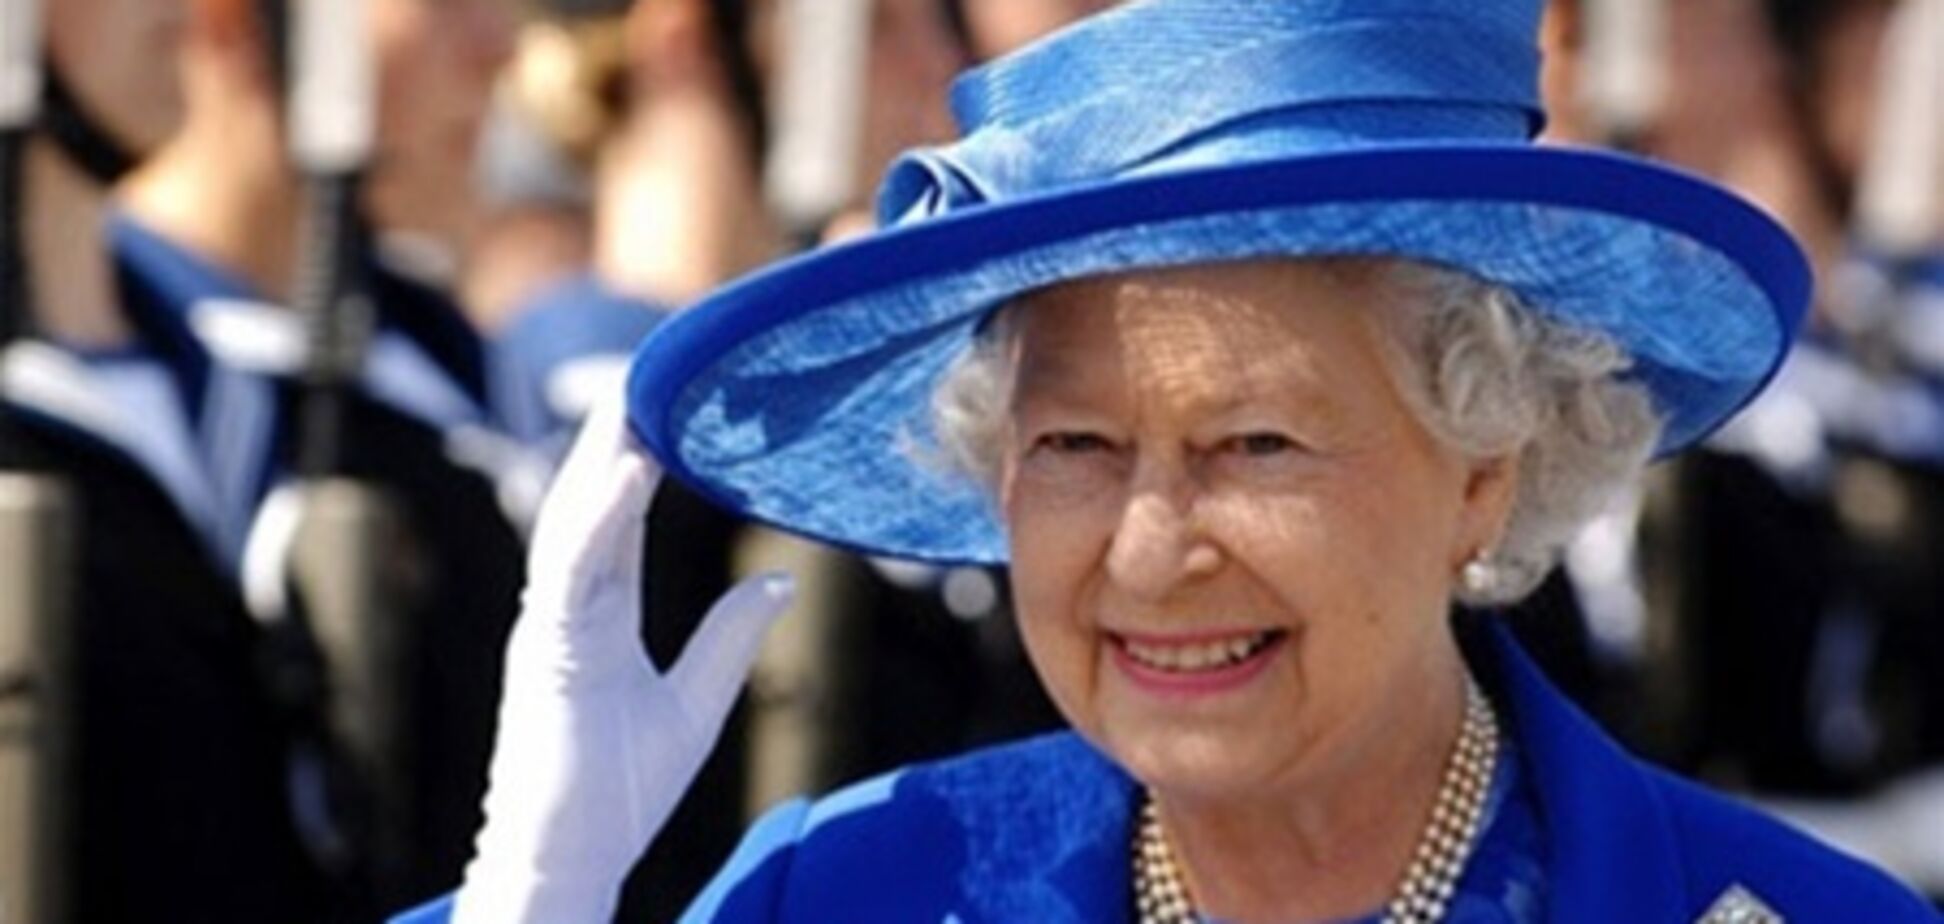 Єлизавета II відзначила 60-ту річницю коронації в колі сім'ї